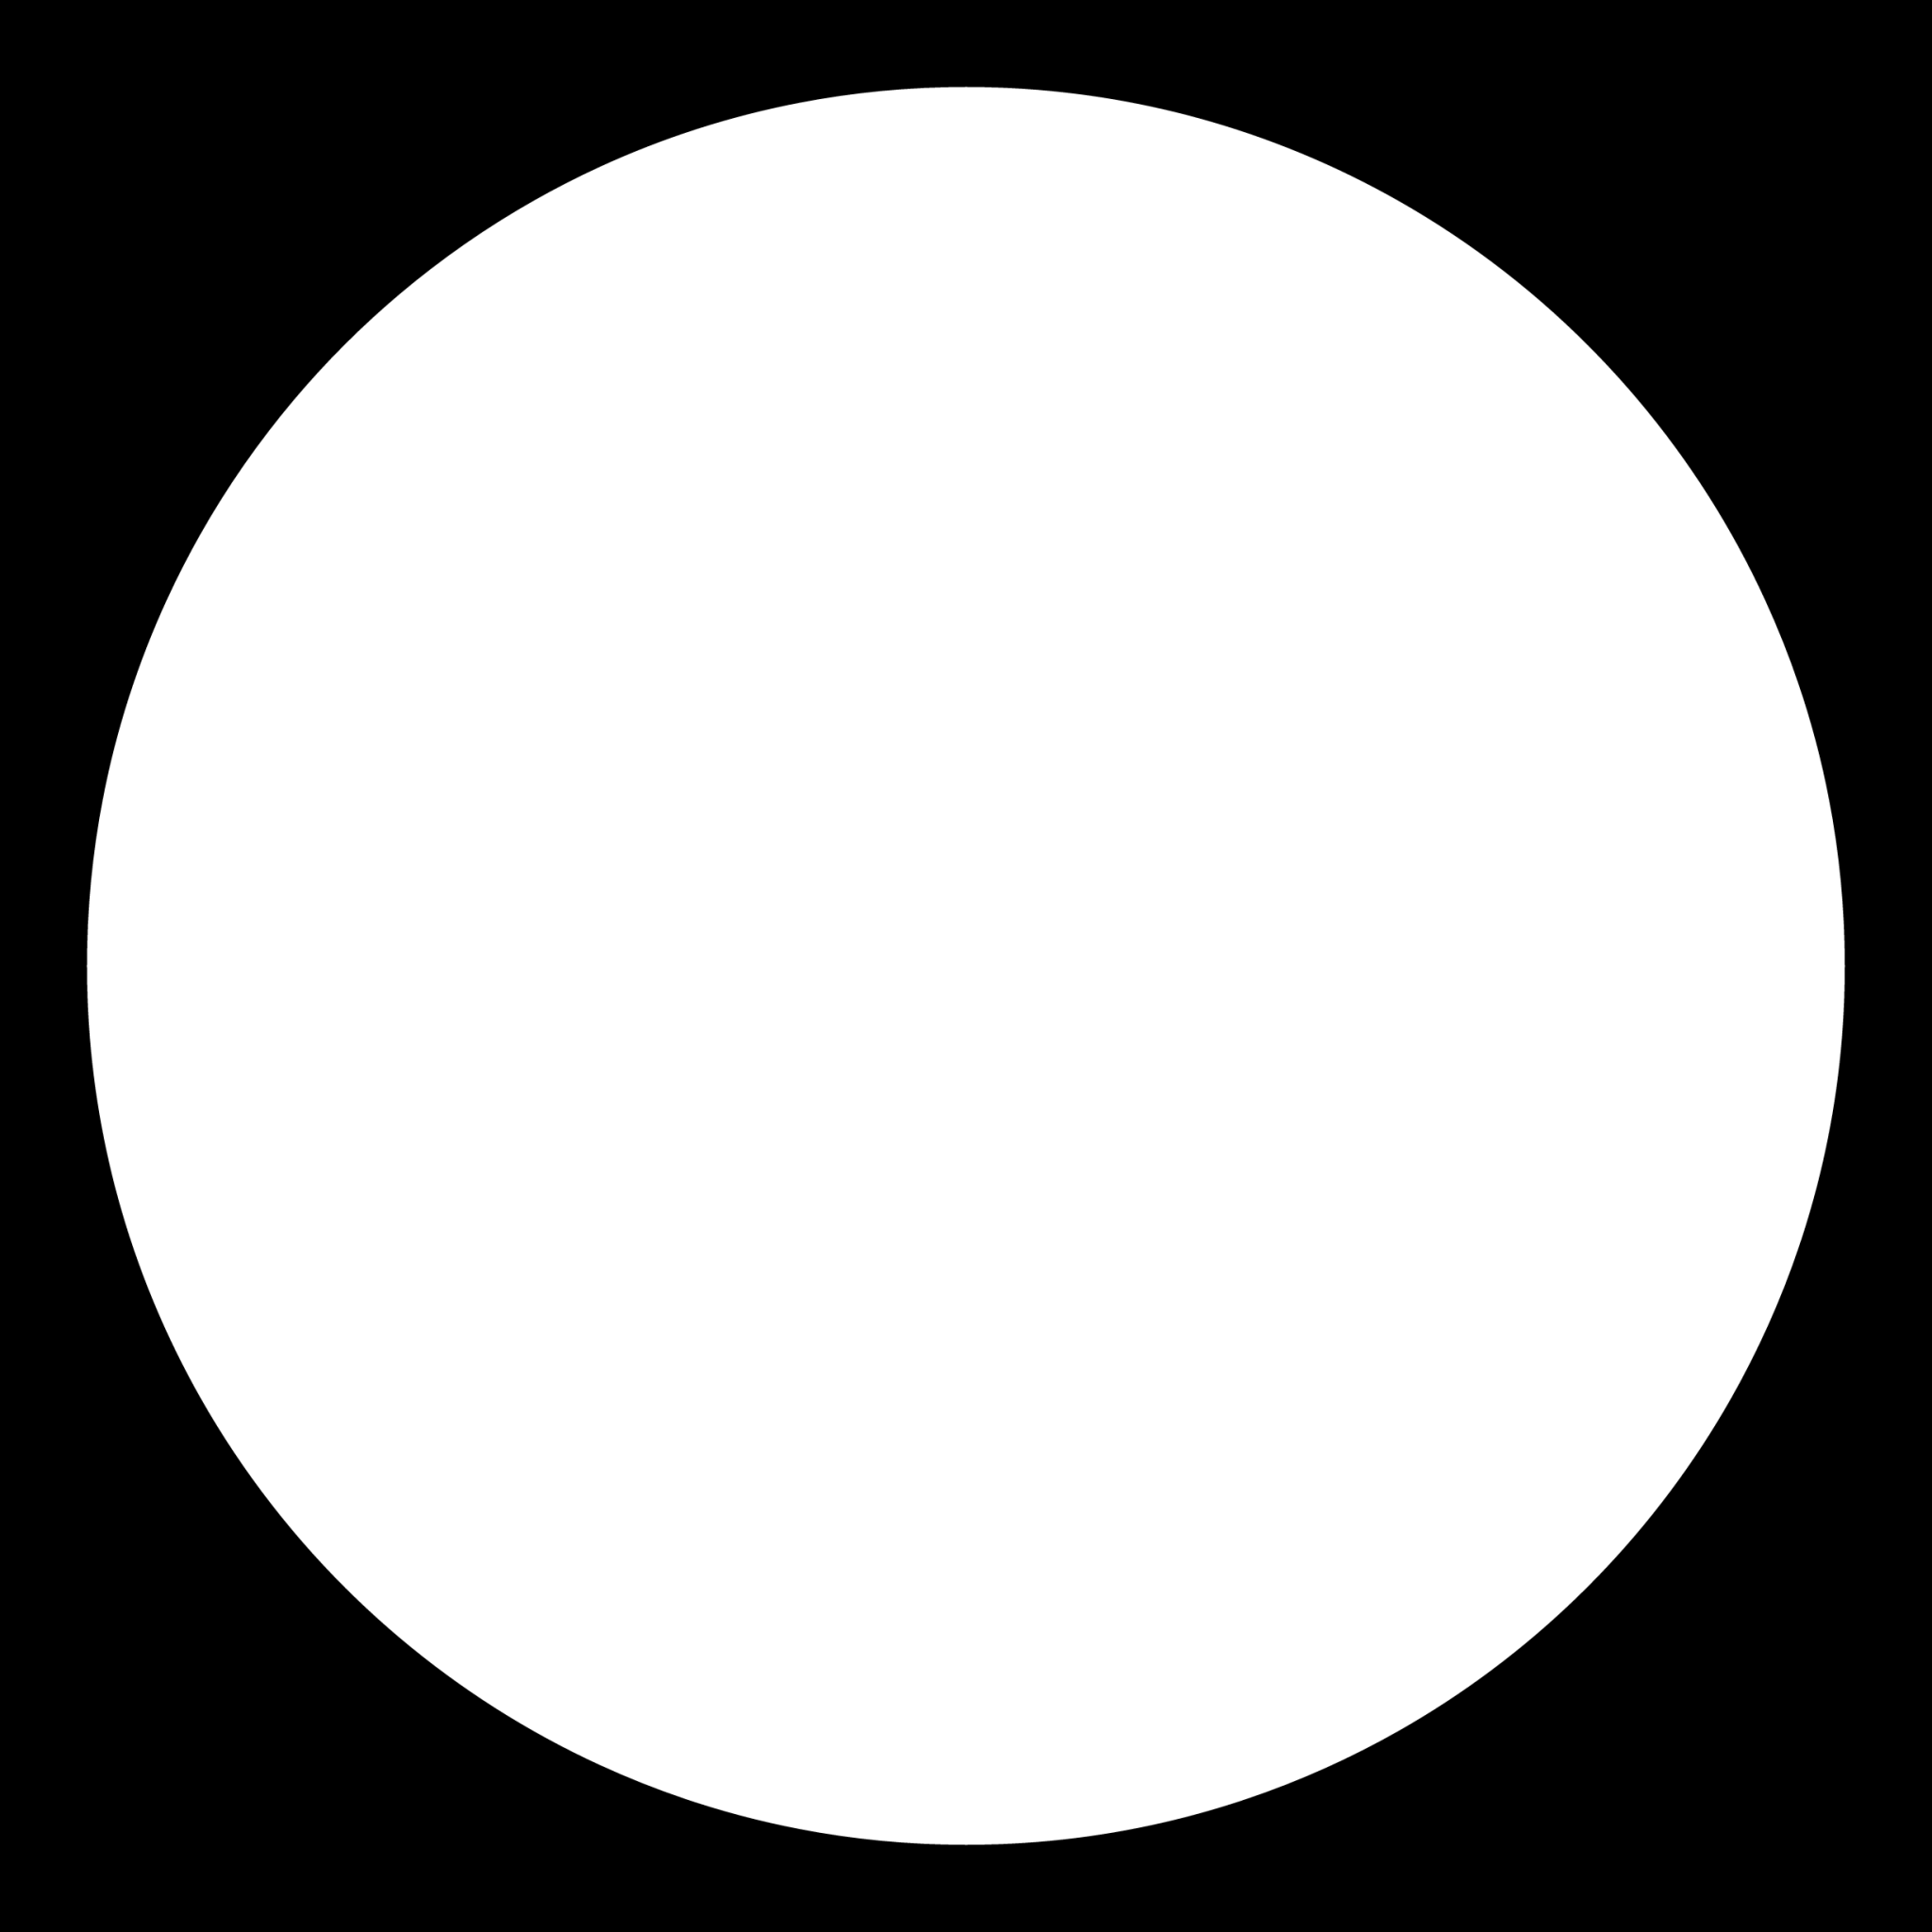 plain circle icon